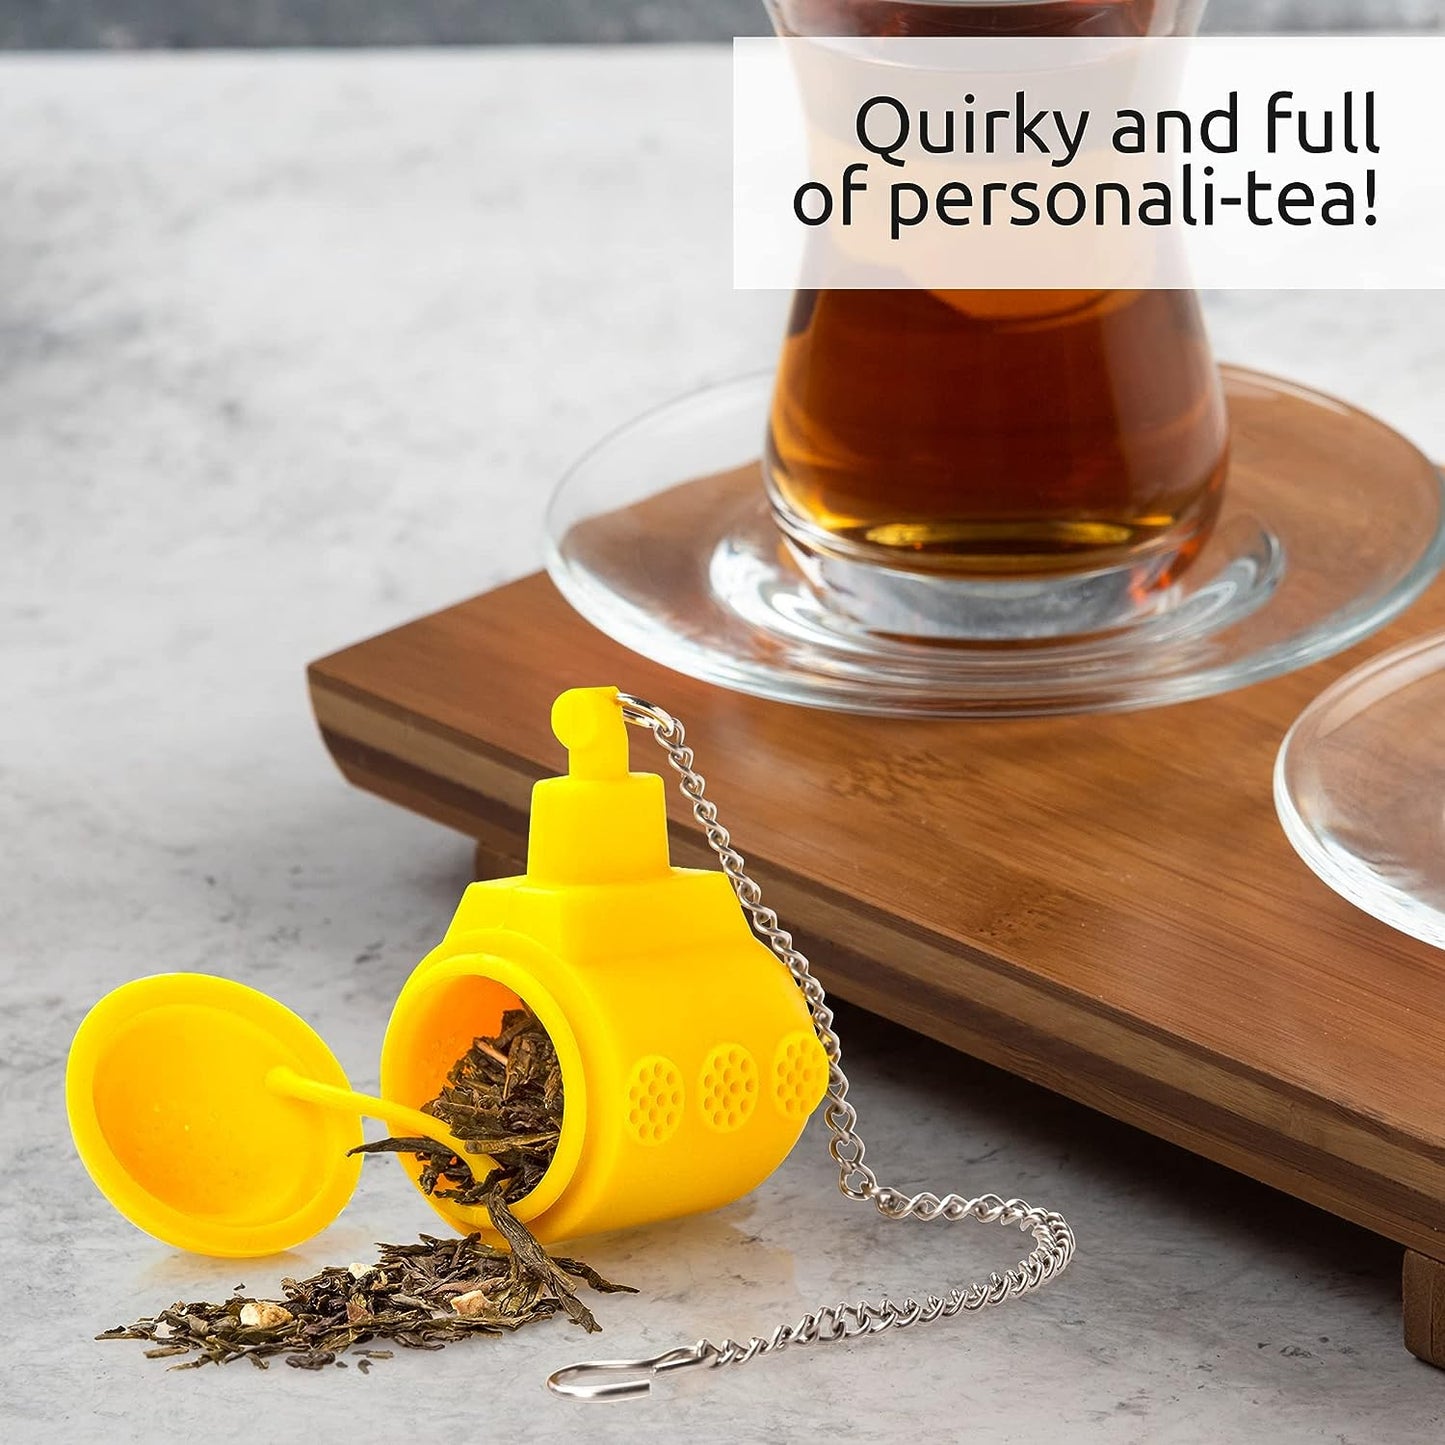 TEA SUB Tea Infuser